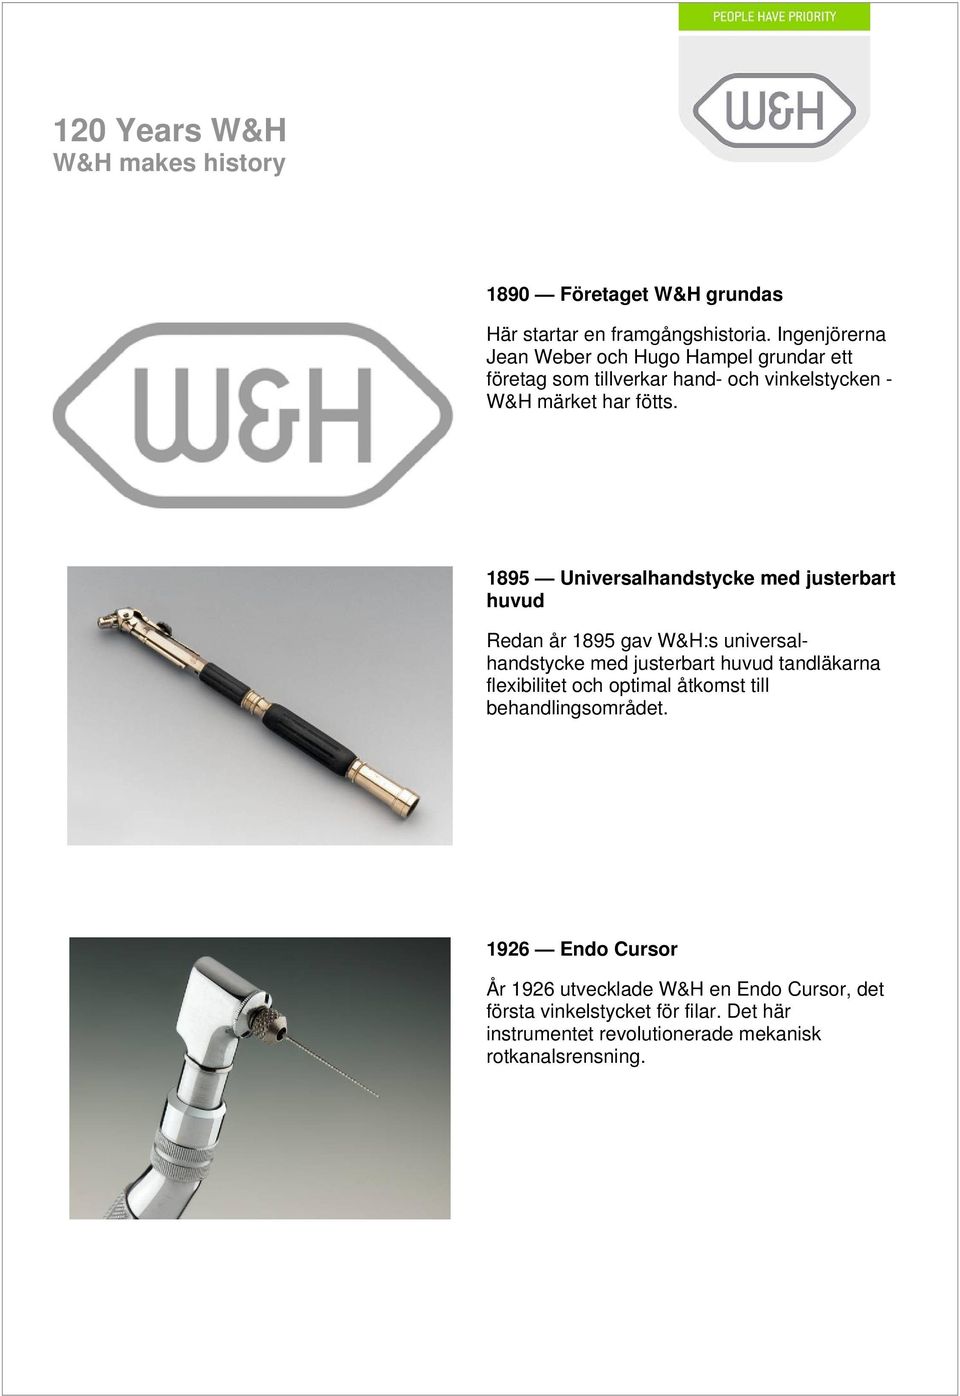 1895 Universalhandstycke med justerbart huvud Redan år 1895 gav W&H:s universalhandstycke med justerbart huvud tandläkarna flexibilitet